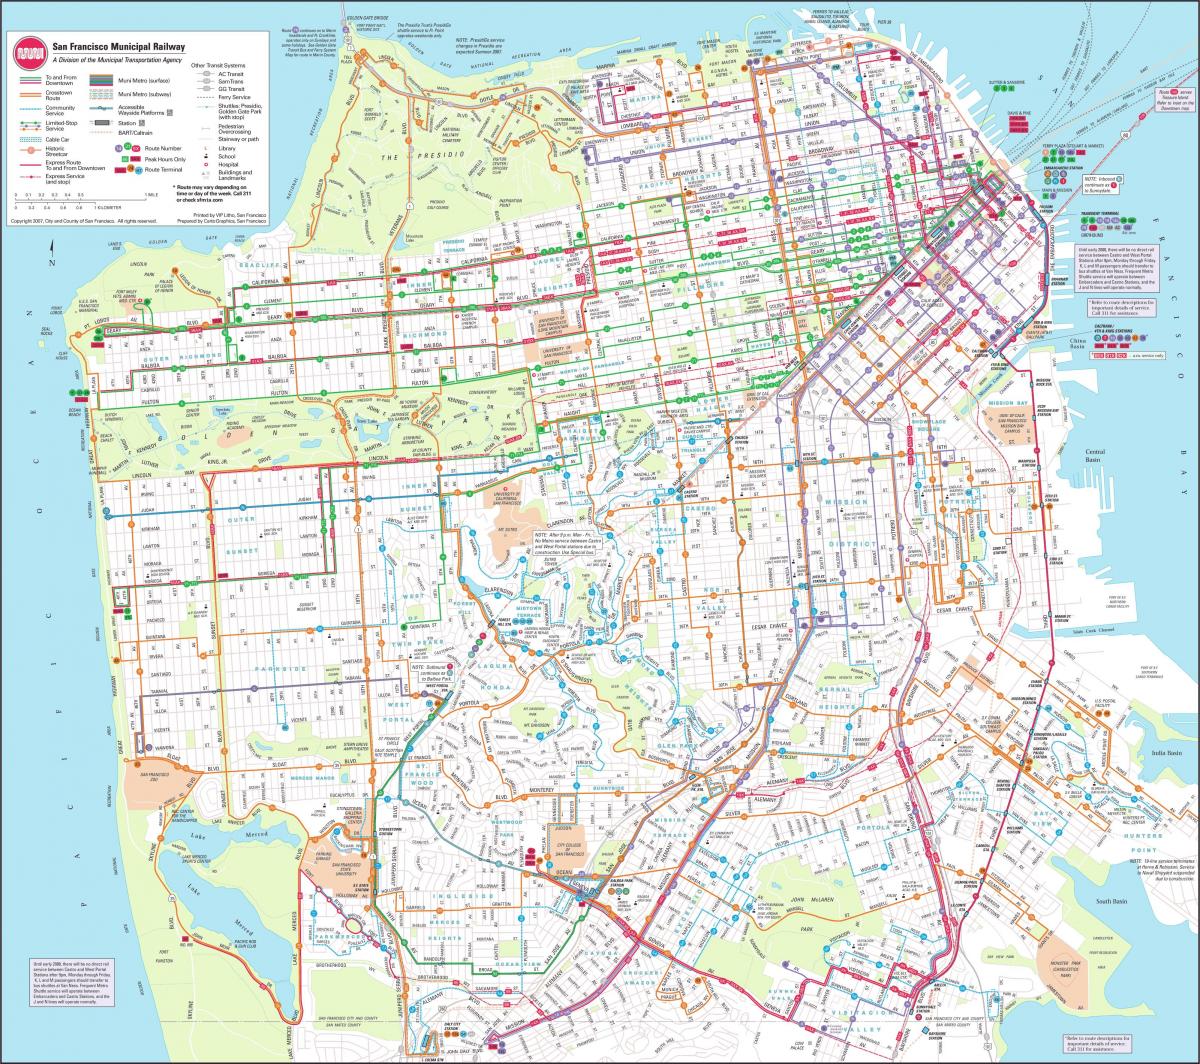 Peta dari San Francisco rel